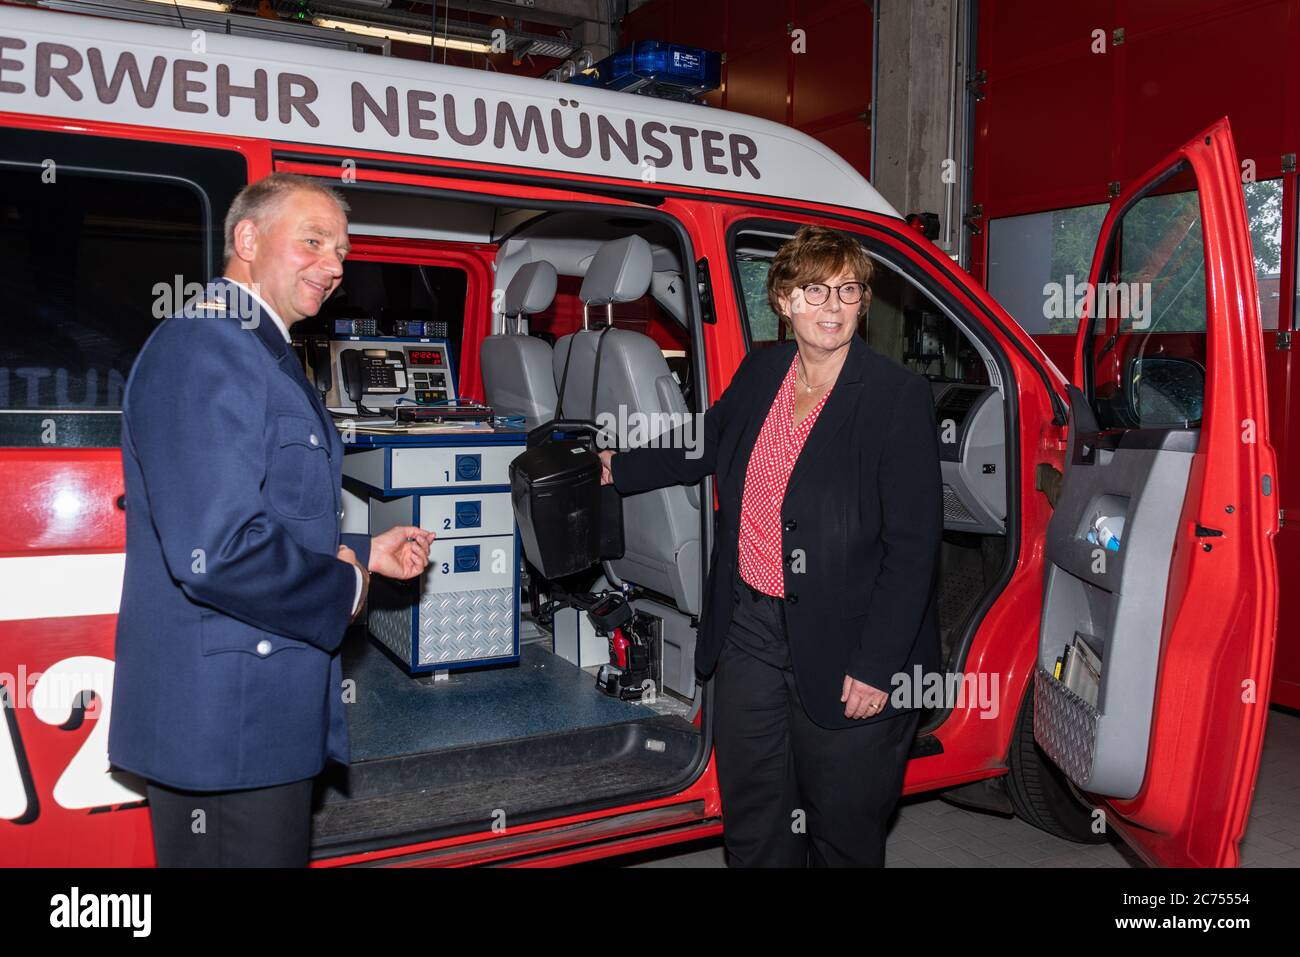 Neumünster, Alemania, 10 de julio de 2020 Sabine Sütterlin-Waack, Ministra del Interior de Schleswig-Holstein, como parte de su gira de verano en el centro de seguridad de Neumünster hoy (14 de julio de 2020), se enteró de la cooperación entre la gestión de incendios y desastres y las estructuras locales de gestión pertinentes. "En el centro de control de peligros de Neumünster, conocerás la enorme variedad de nuestros departamentos de bomberos, servicios de emergencia y protección civil en el trabajo voluntario y a tiempo completo. Todo se une aquí y todos trabajan juntos para ayudar y salvar a la gente. Crédito: Penofoto/Alamy Live News Foto de stock